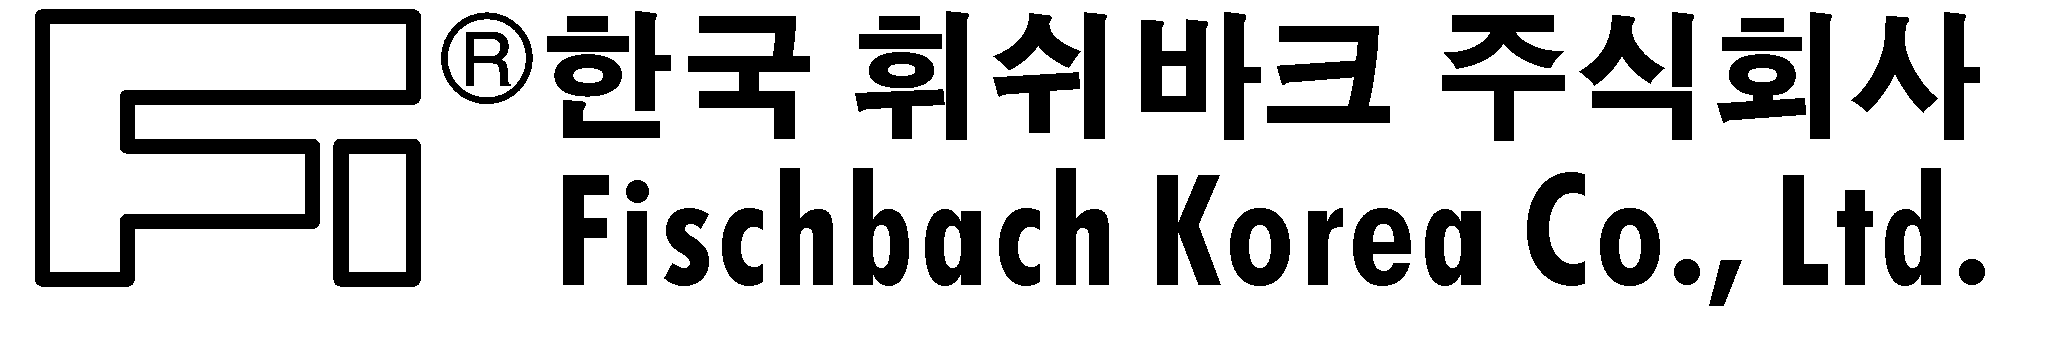 FISCHBACH KOREA CO., LTD.